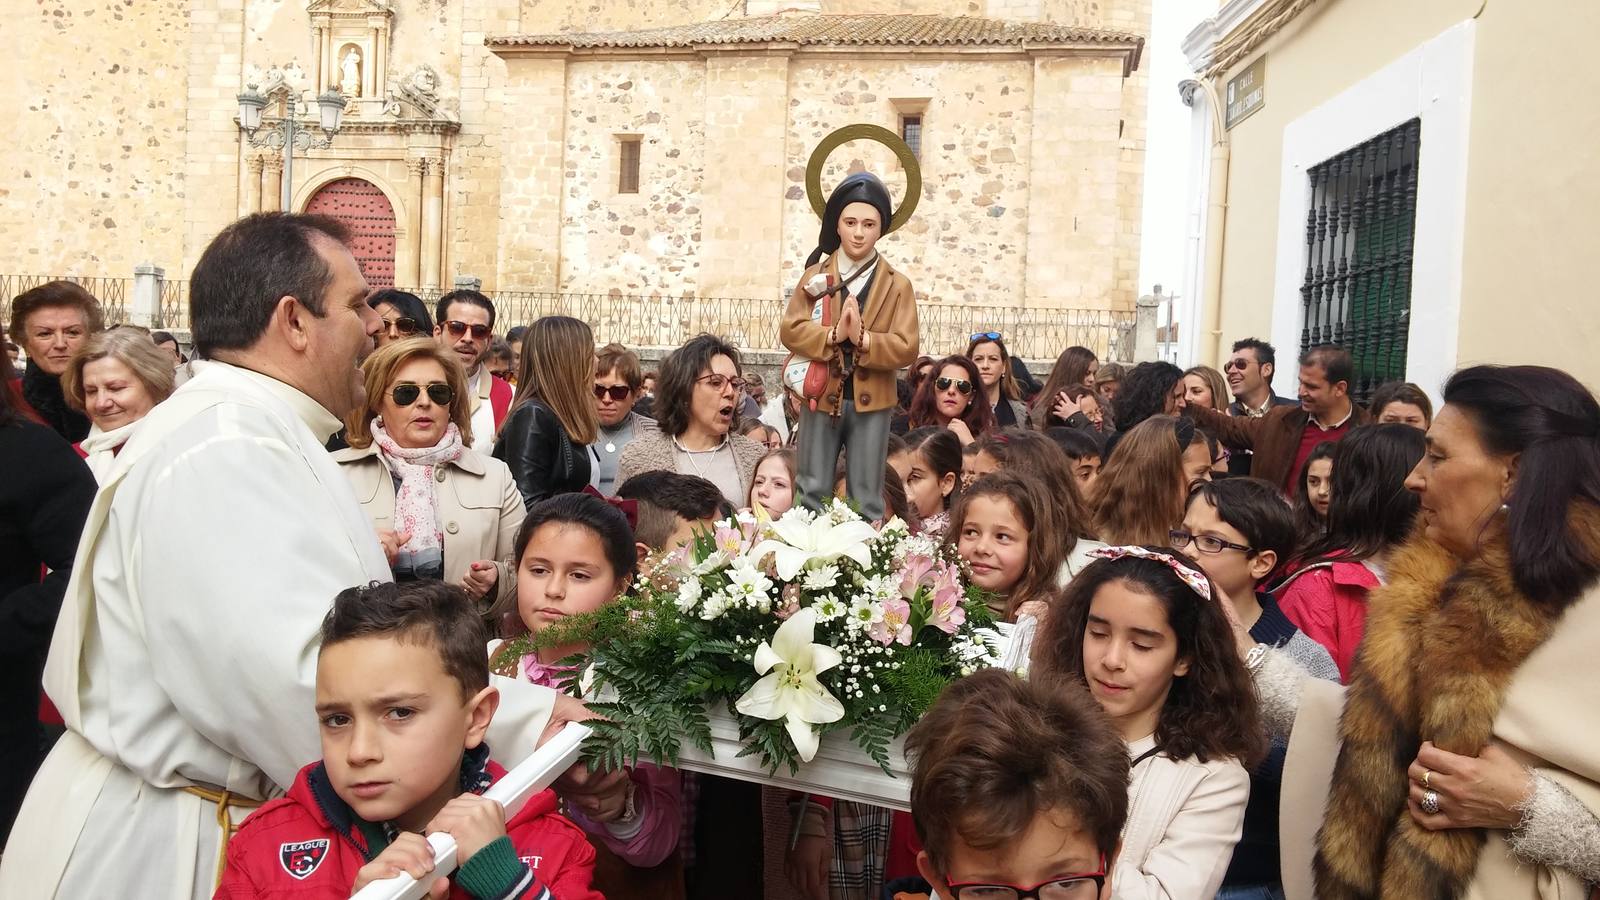 Los niños portando a hombros el paso de Francisco Martos, y el cura Eugenio coordinando la procesión de los pastorcitos de Fátima.